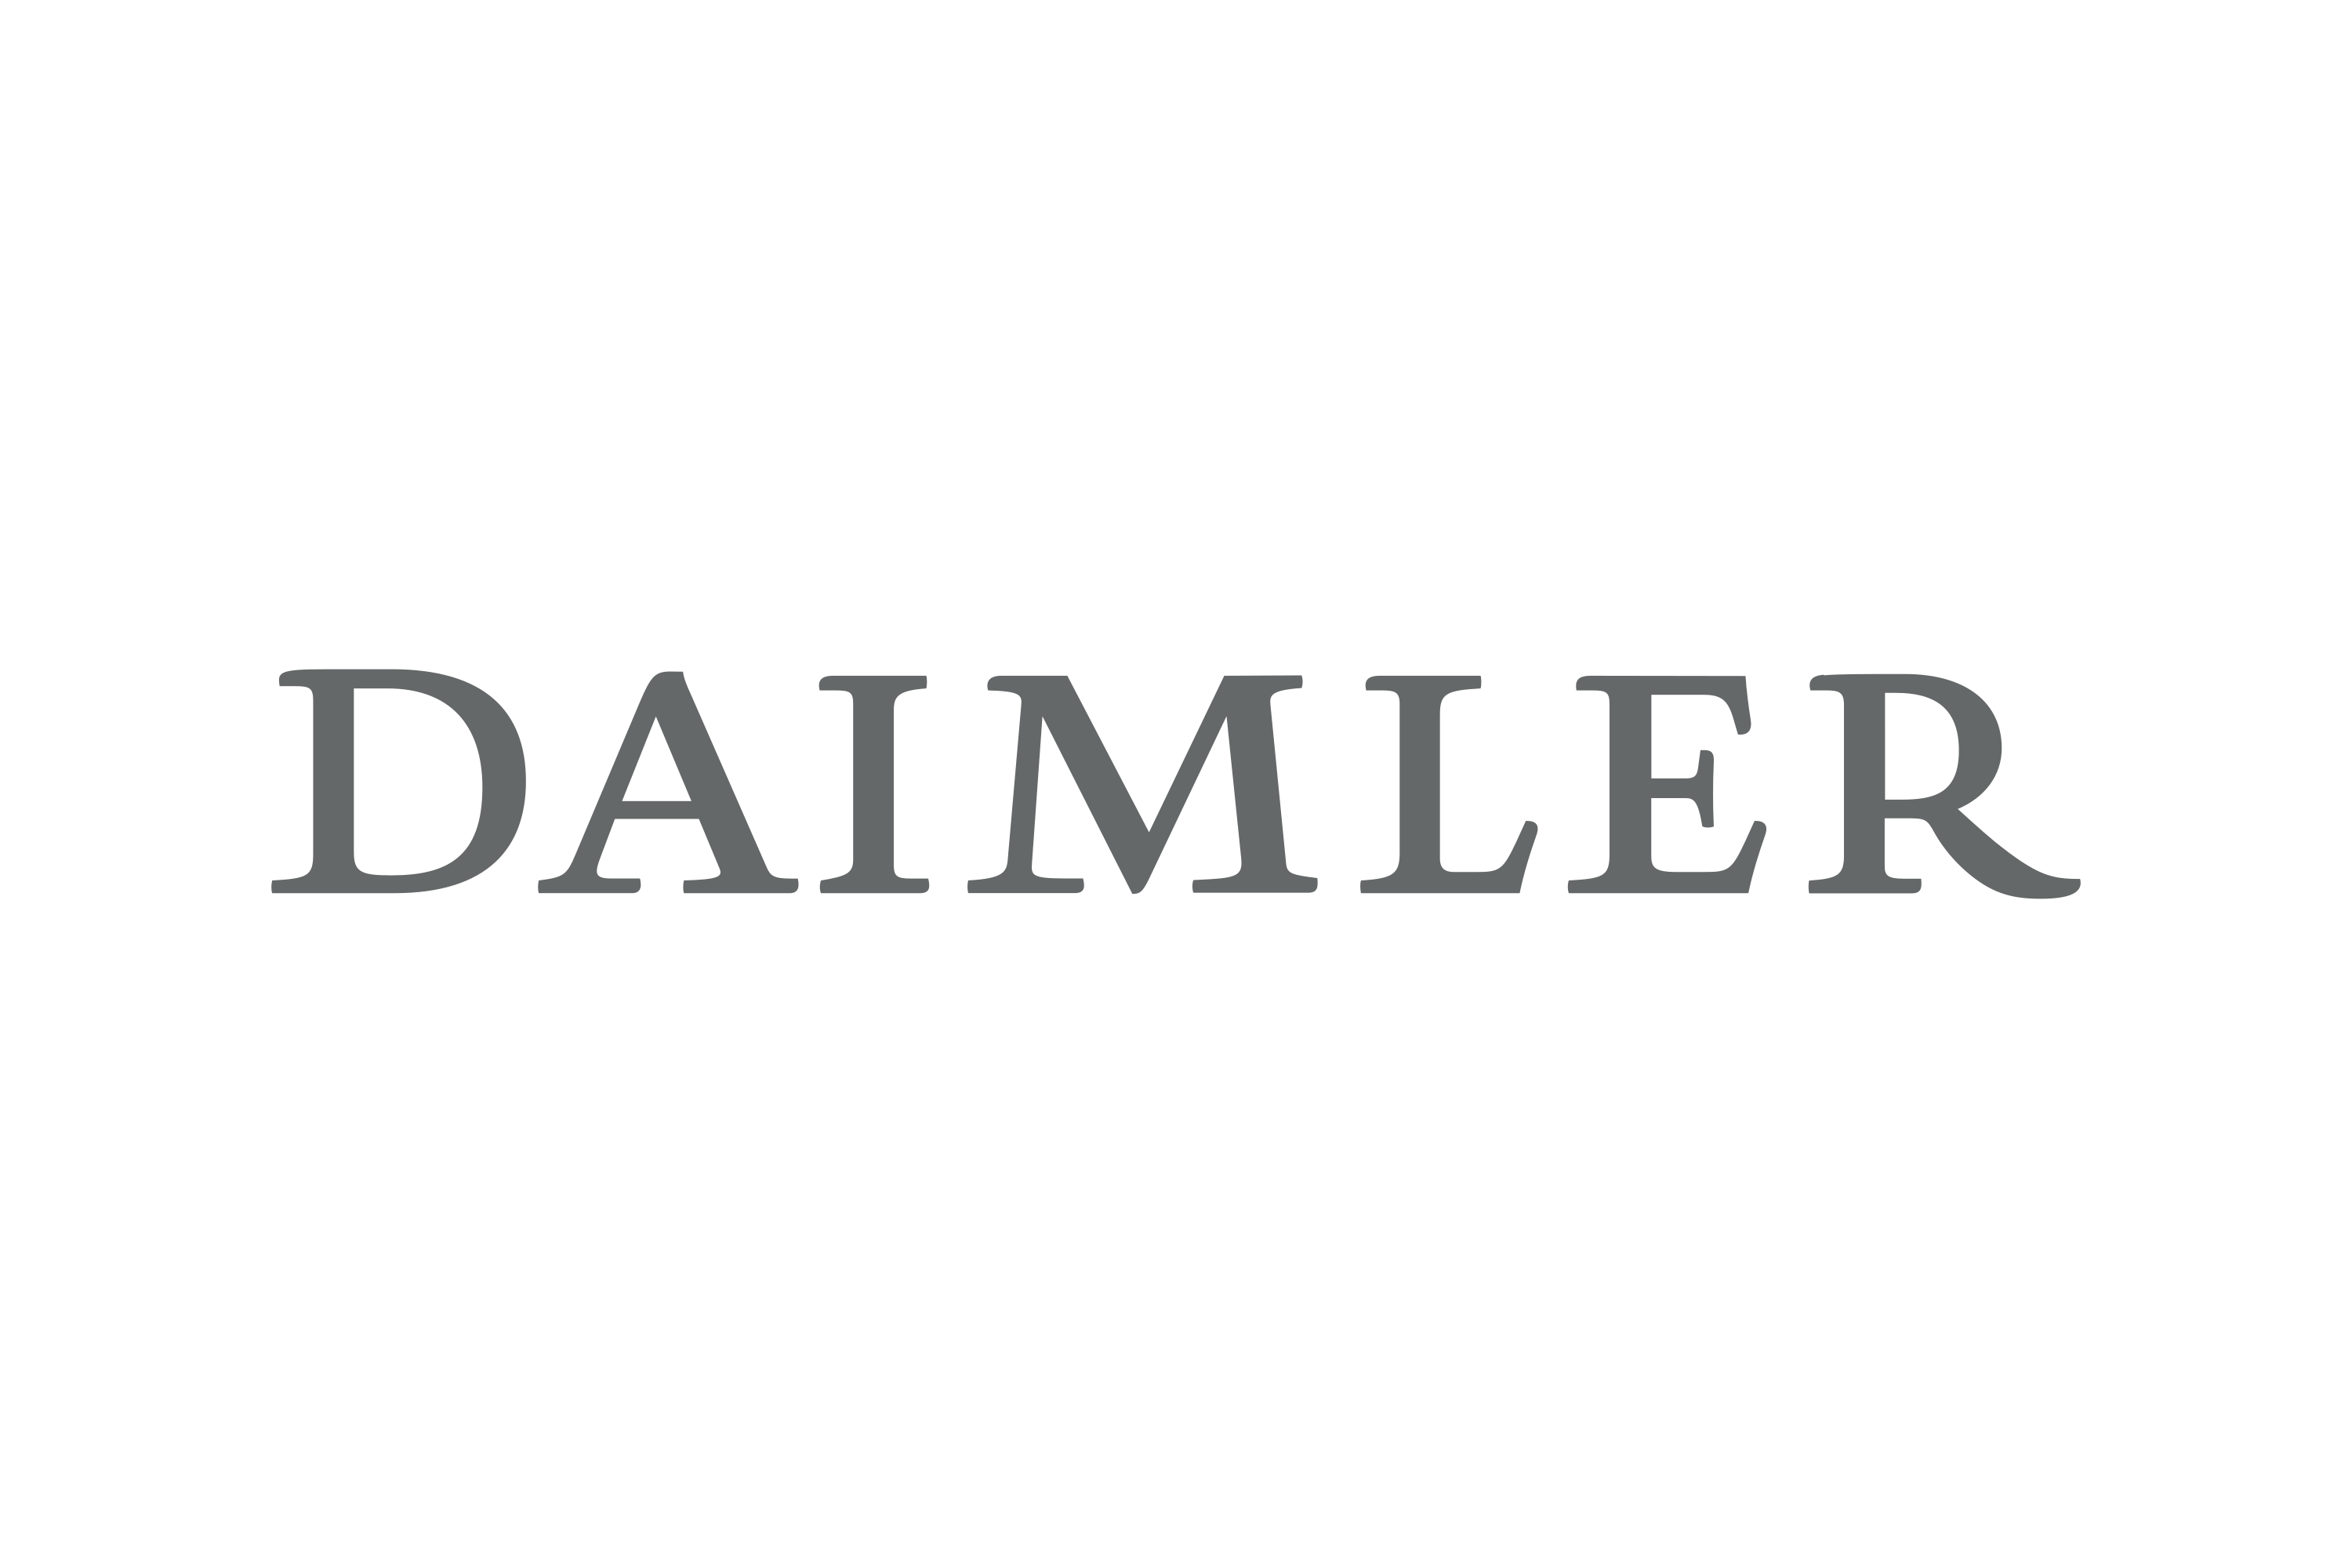 Daimler Mobility Logo